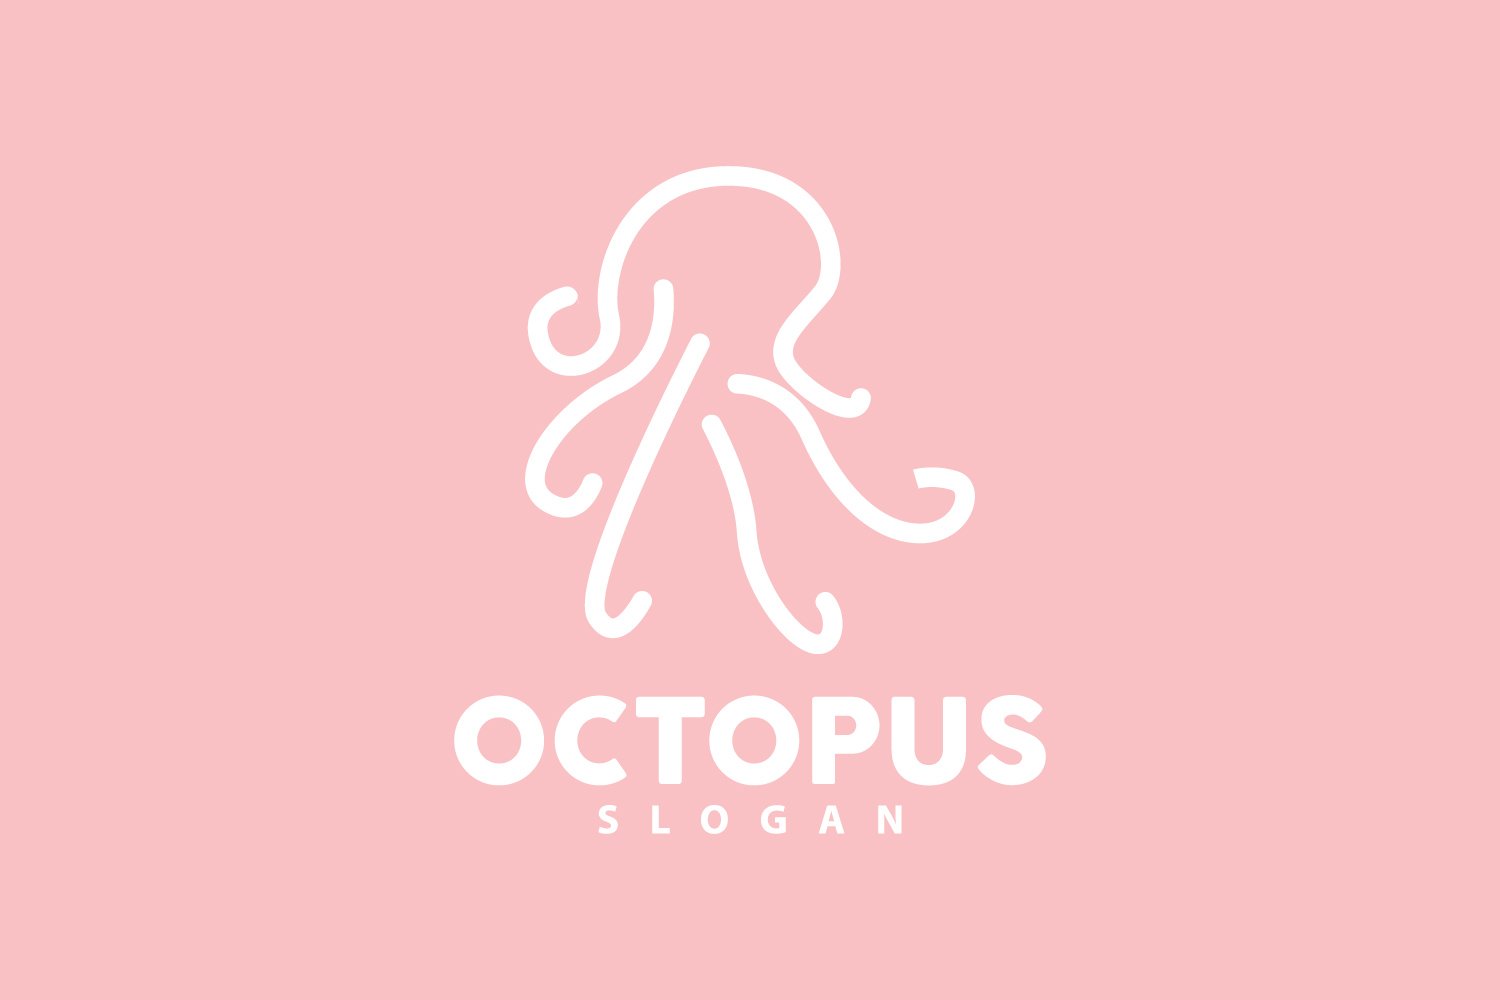 Octopus Logo Old Retro Vintage DesignV18